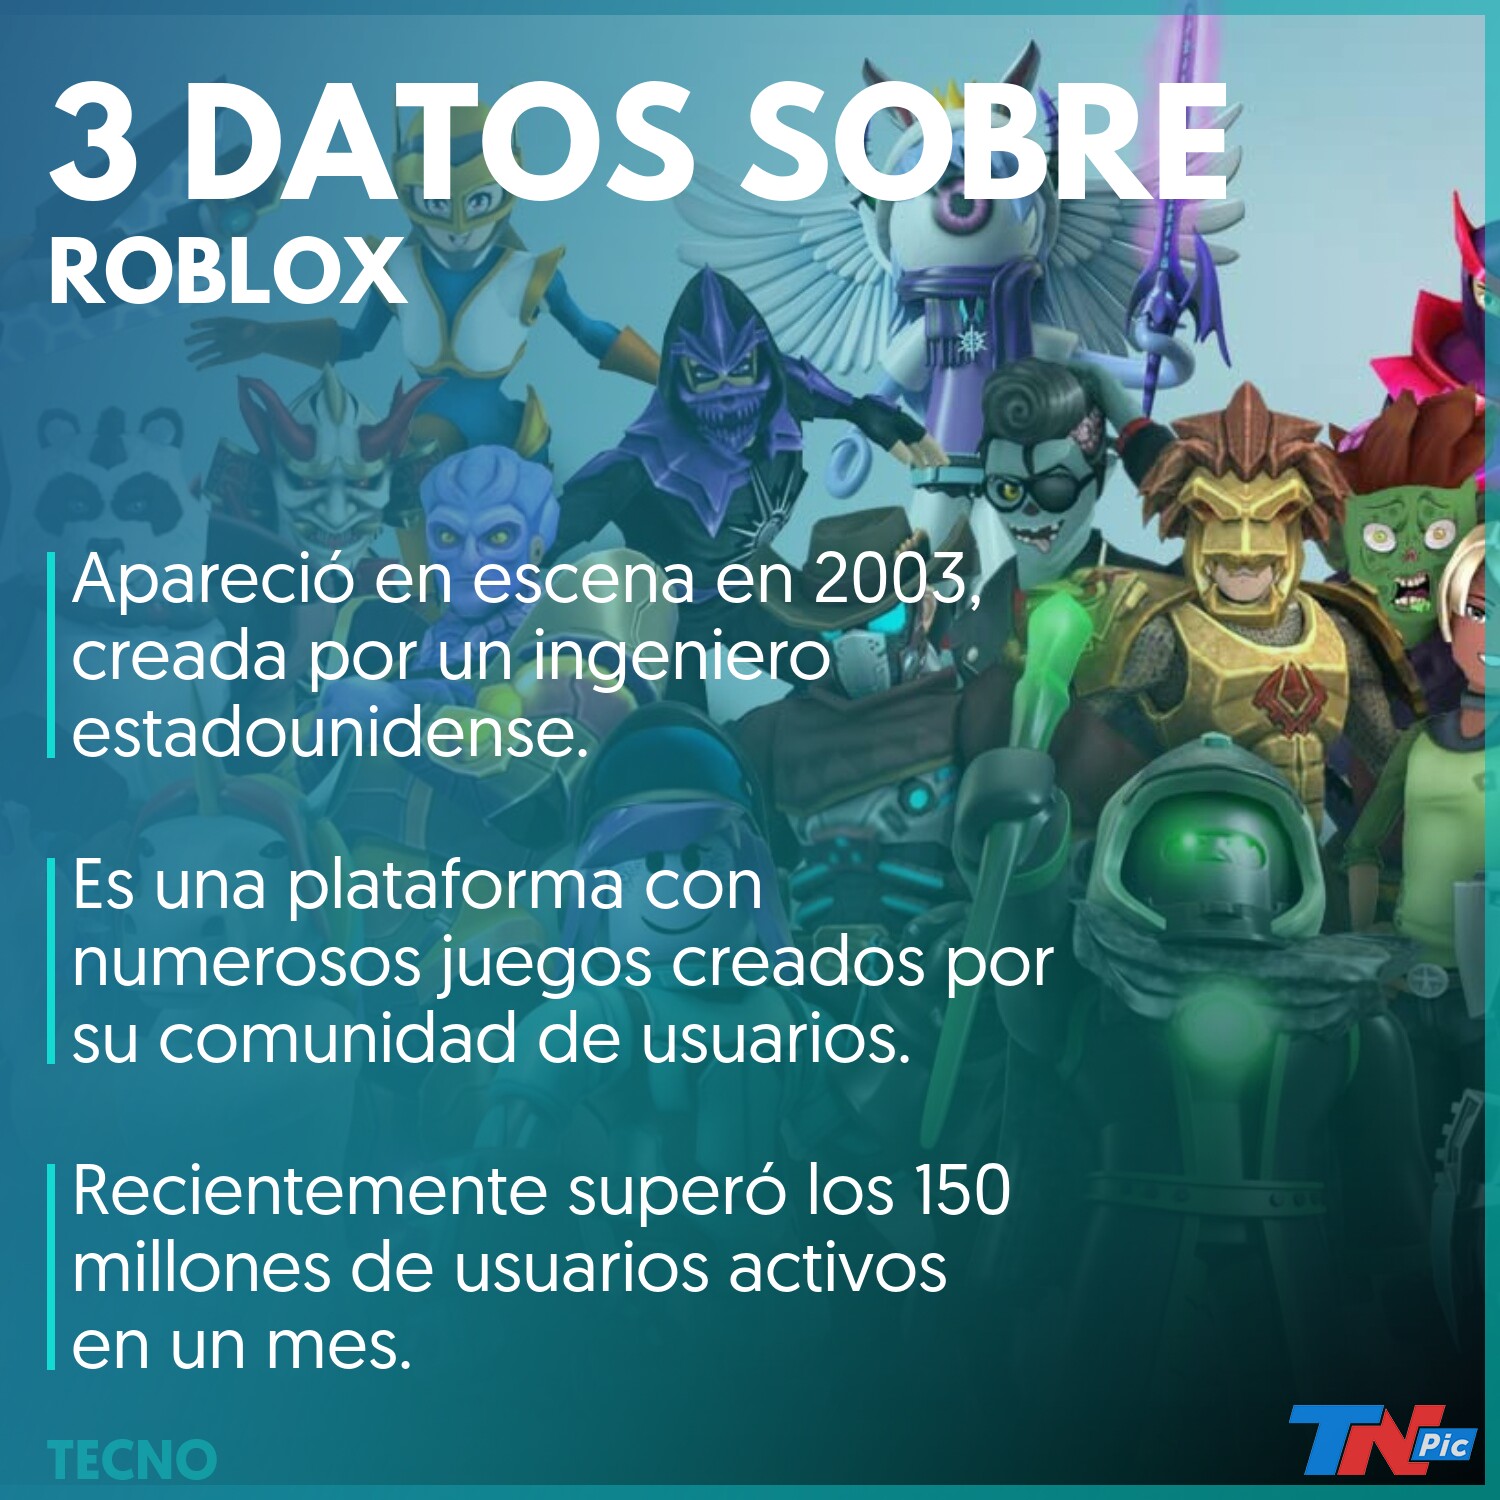 Distancia Fisica Y Sociabilidad Digital La Salsa Secreta De Roblox Para Seducir A Los Jugadores En Dias De Pandemia Tn - 2003 roblox